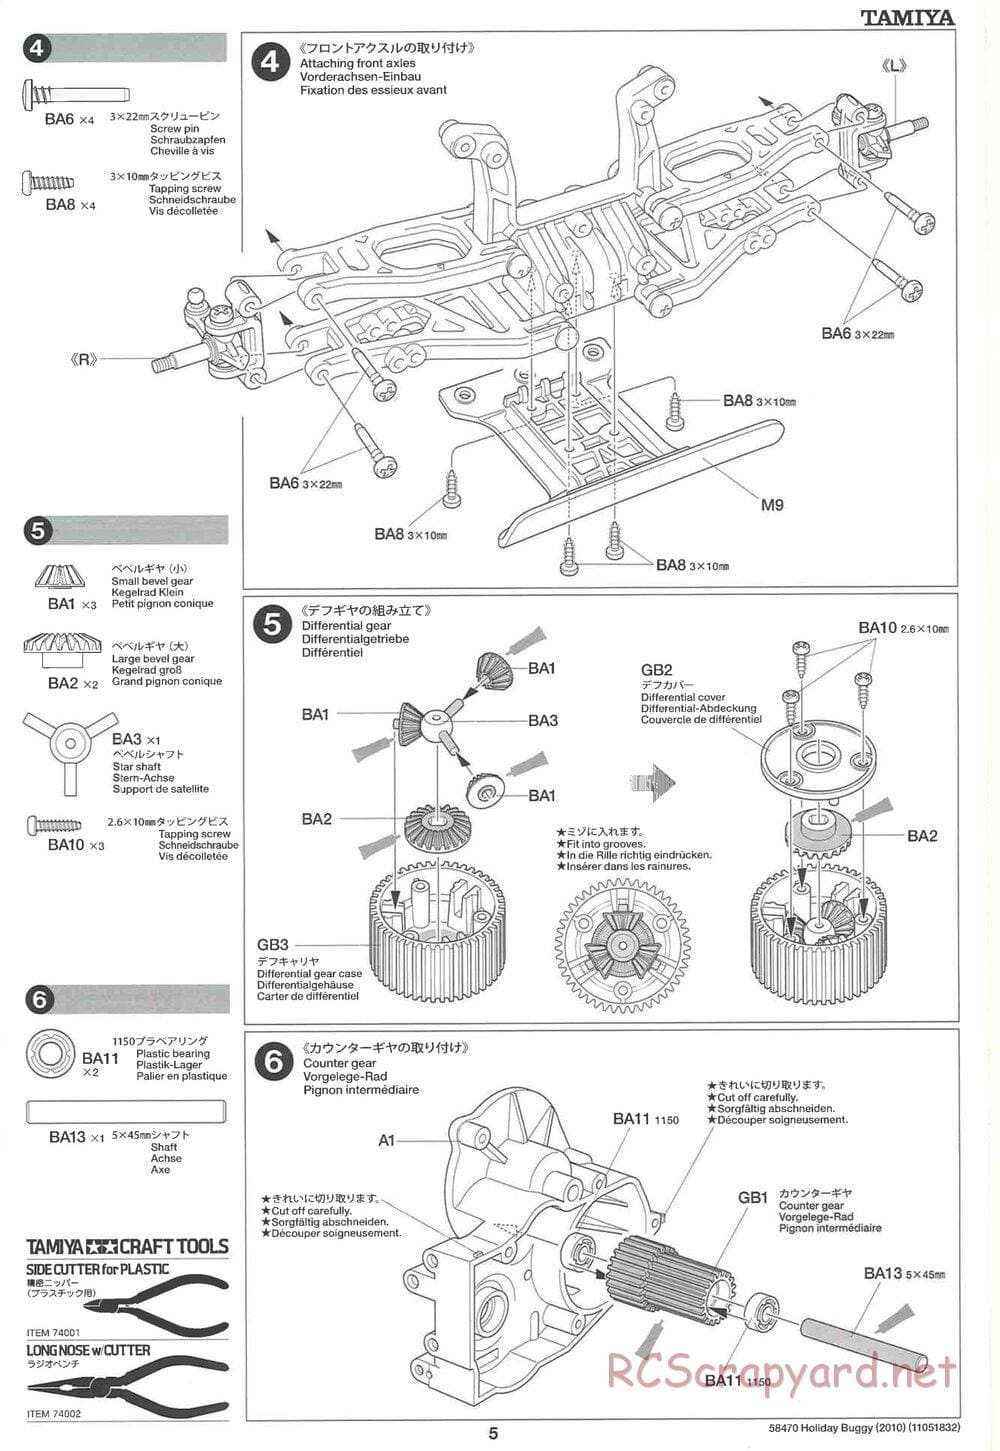 Tamiya - Holiday Buggy 2010 Chassis - Manual - Page 5